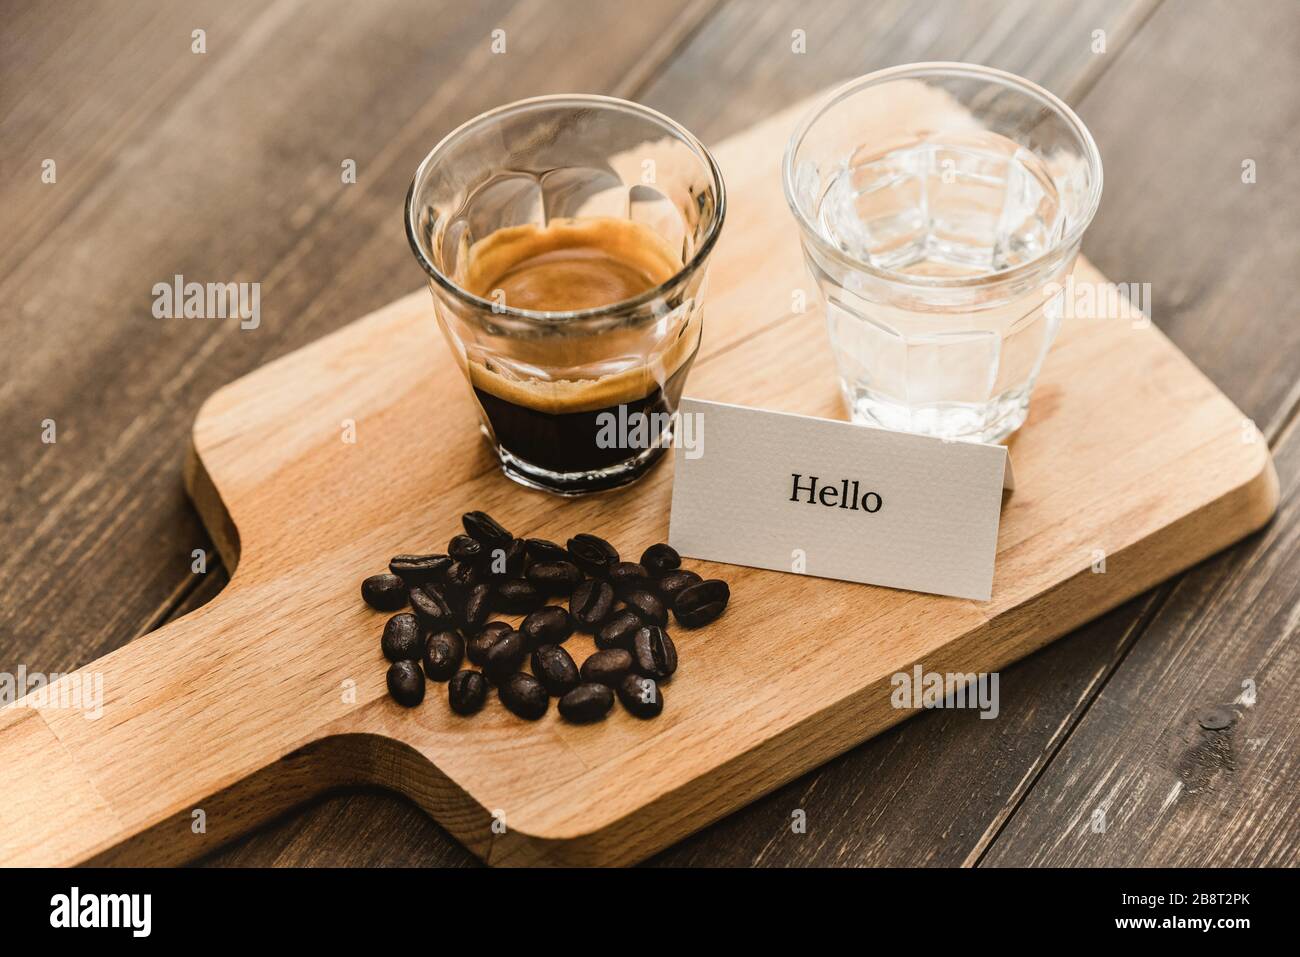 Frisch gebrühter schwarzer Espresso-Kaffee und Wasser in Schussgläsern, serviert auf einer zum Trinken bereiten Holzplatte Stockfoto